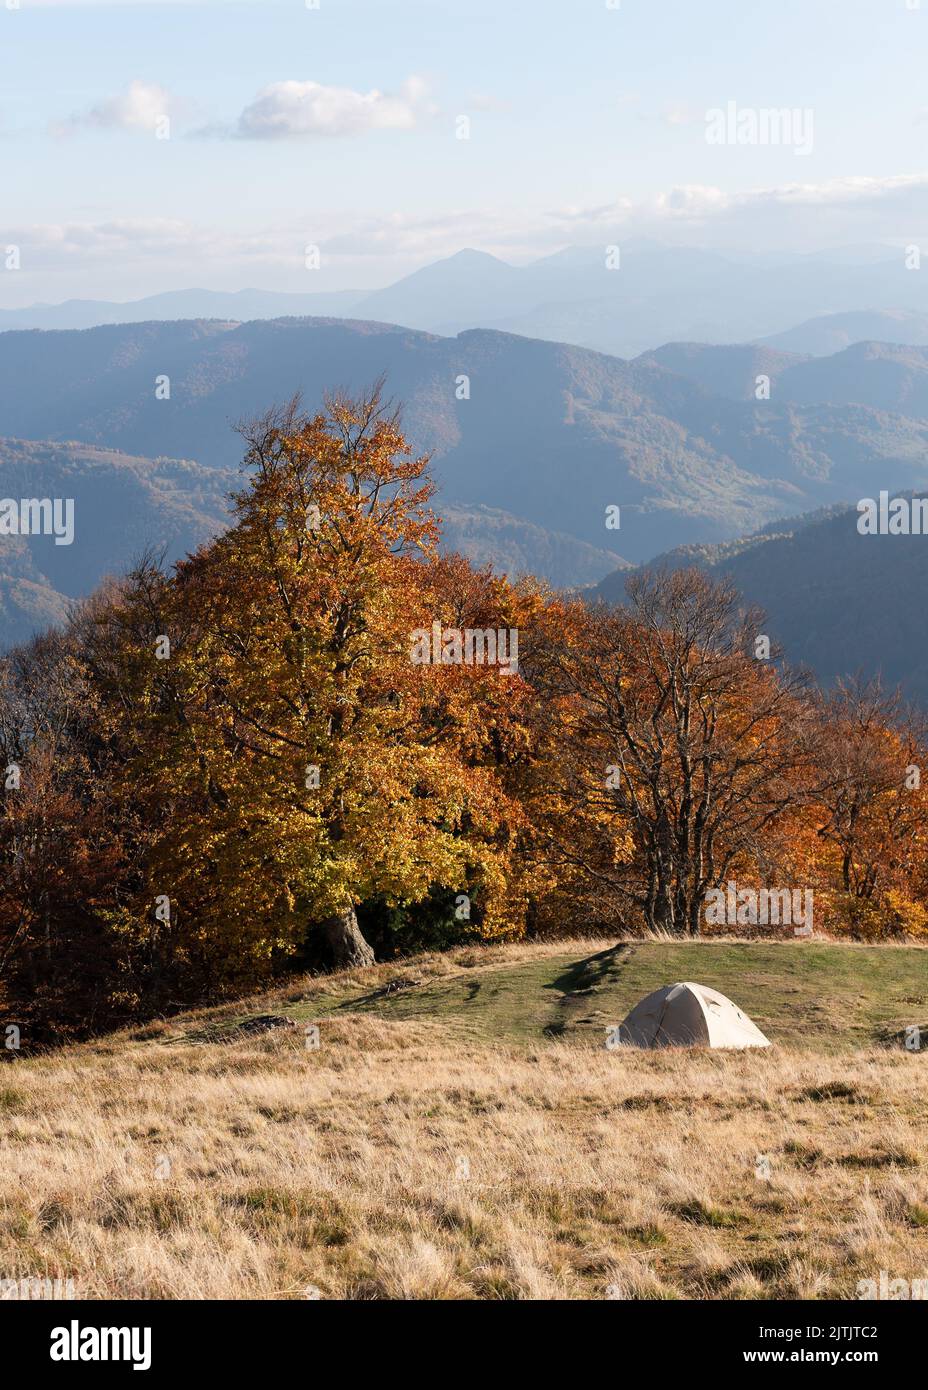 Vacances d'automne avec une tente dans la nature dans une randonnée en montagne Banque D'Images